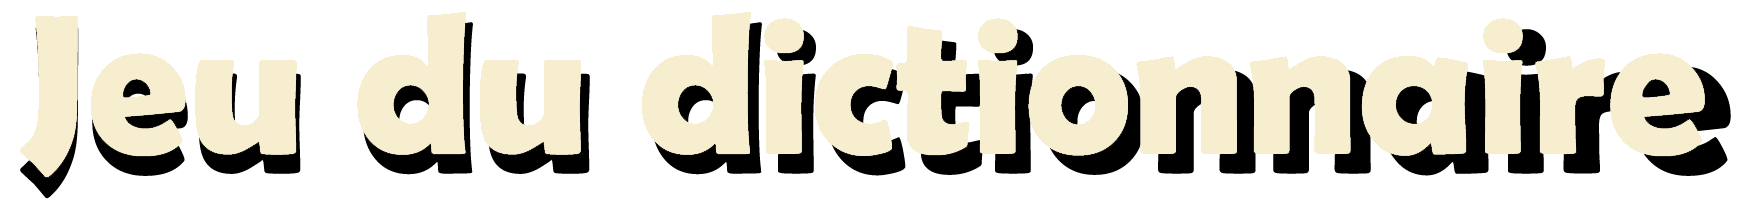 Jeu dictionnaire logo